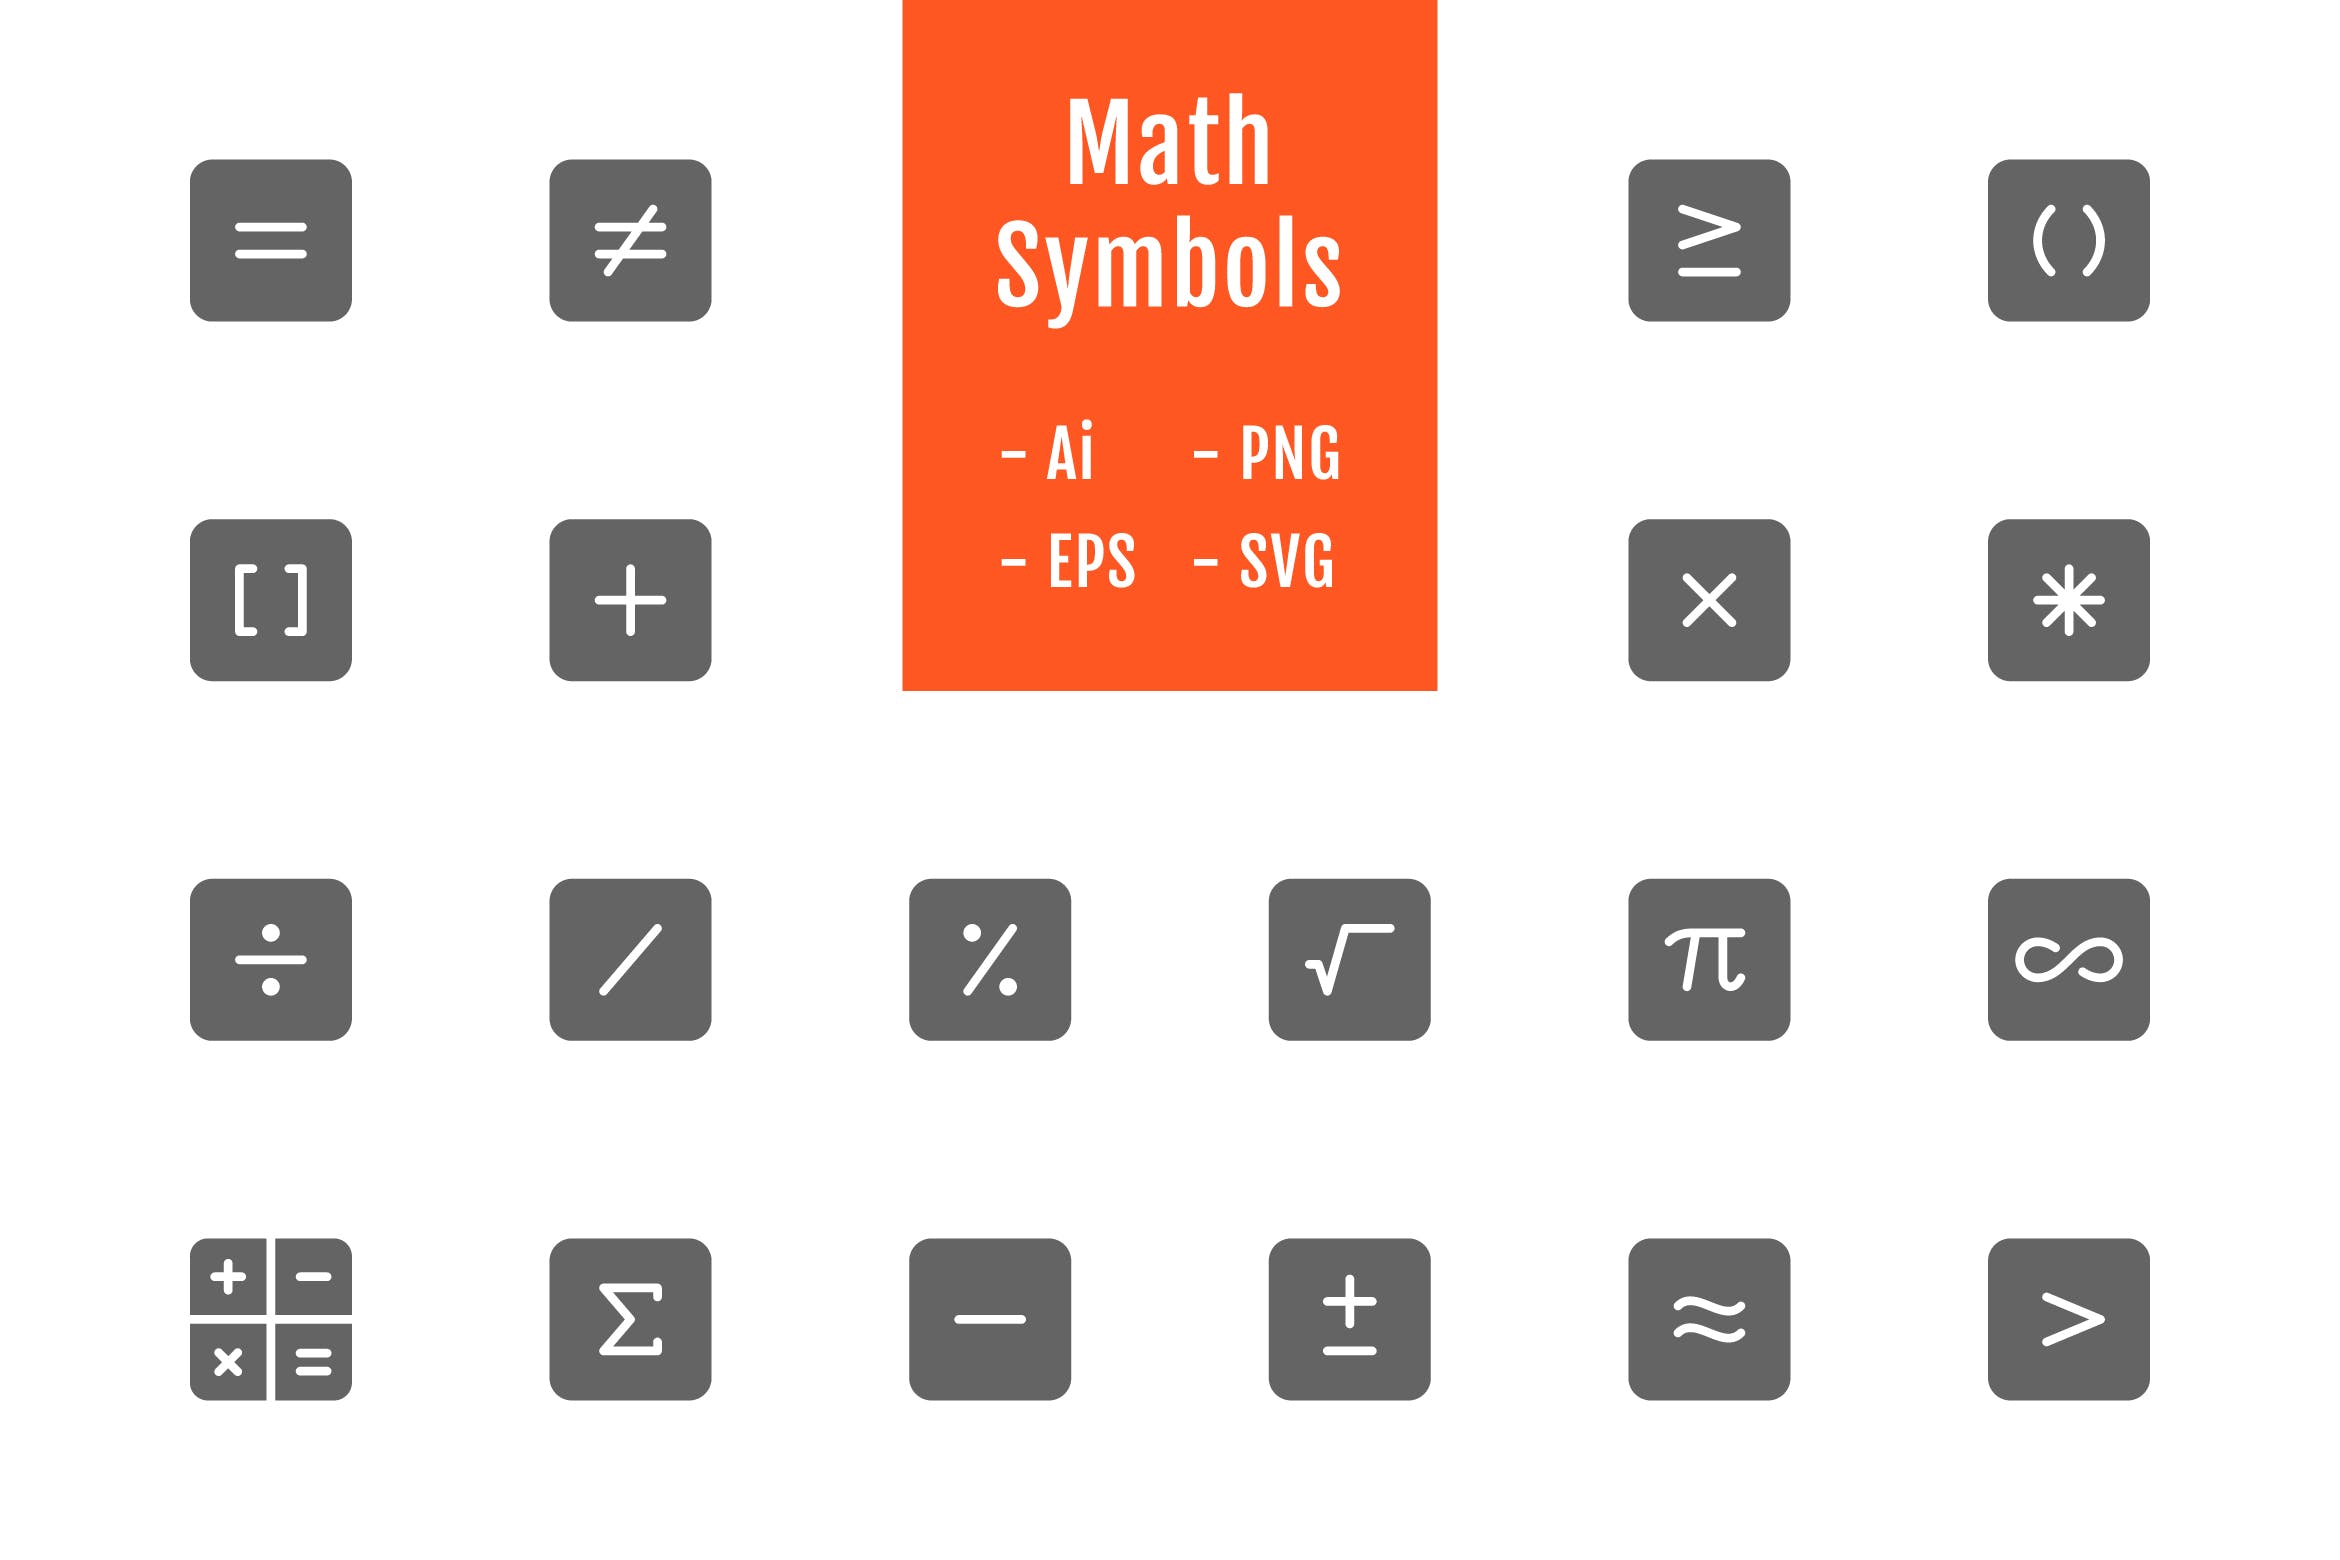 20个数学符号矢量实心图标设计素材 20 Math Symbols (Solid)插图